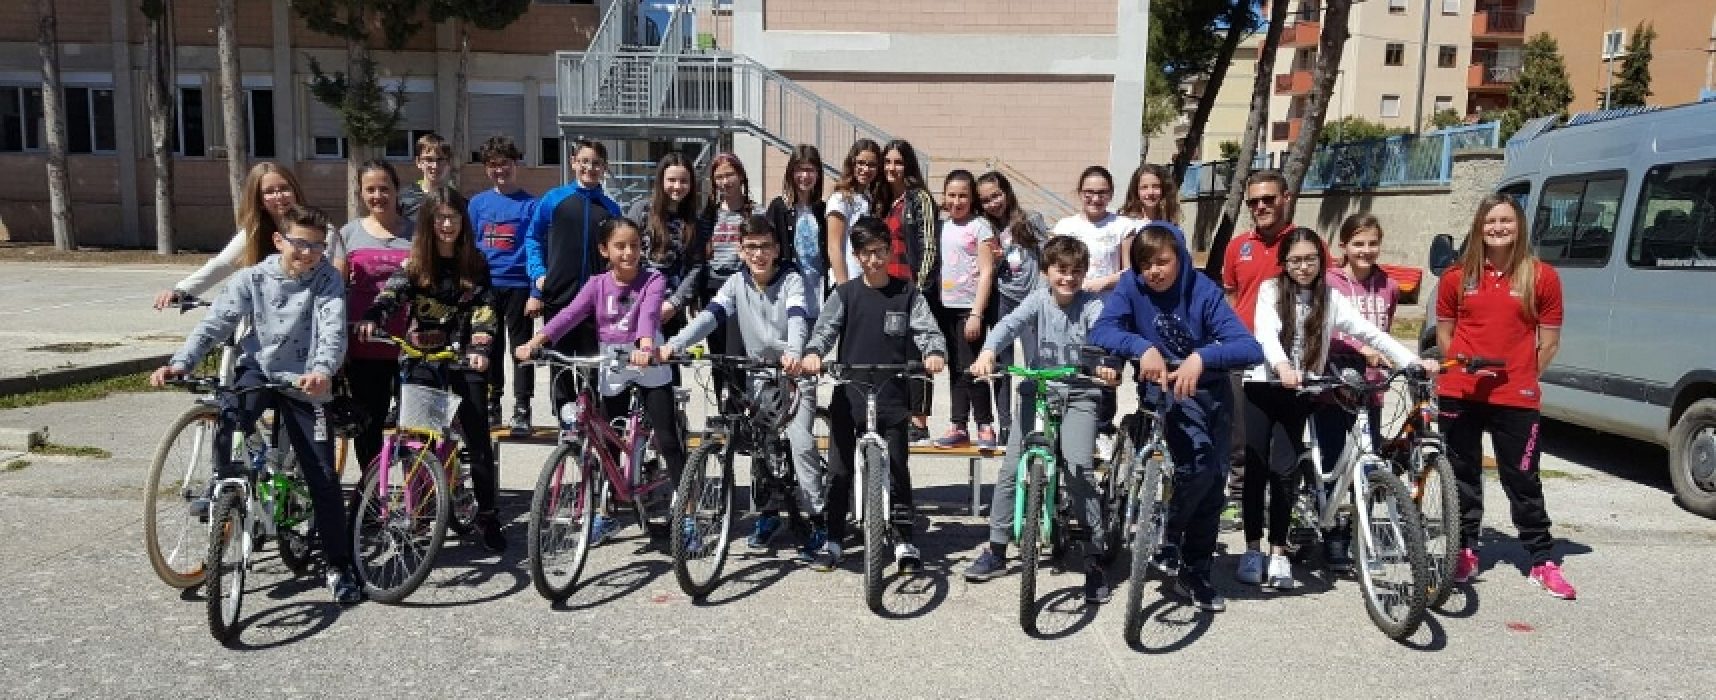 Ciclismo: ottimo riscontro per il progetto della Cavallaro, “Cicloamici per sempre”